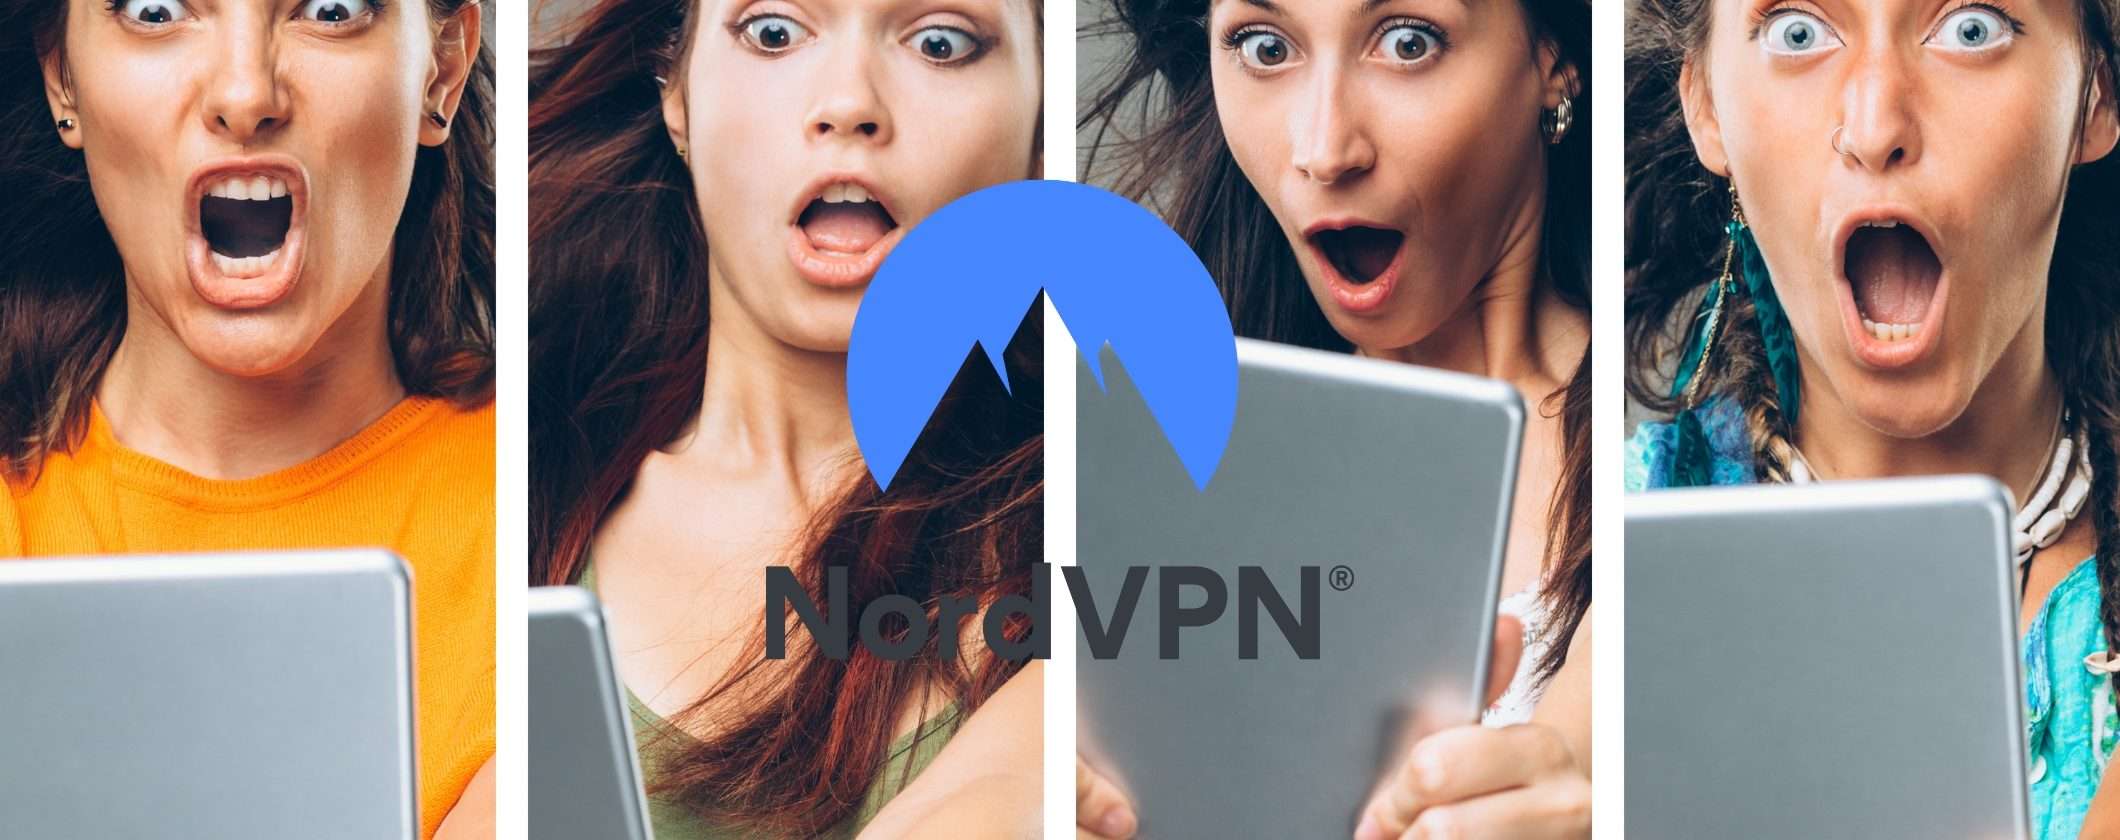 Problemi di connessione e streaming? Risolvili in un attimo con NordVPN